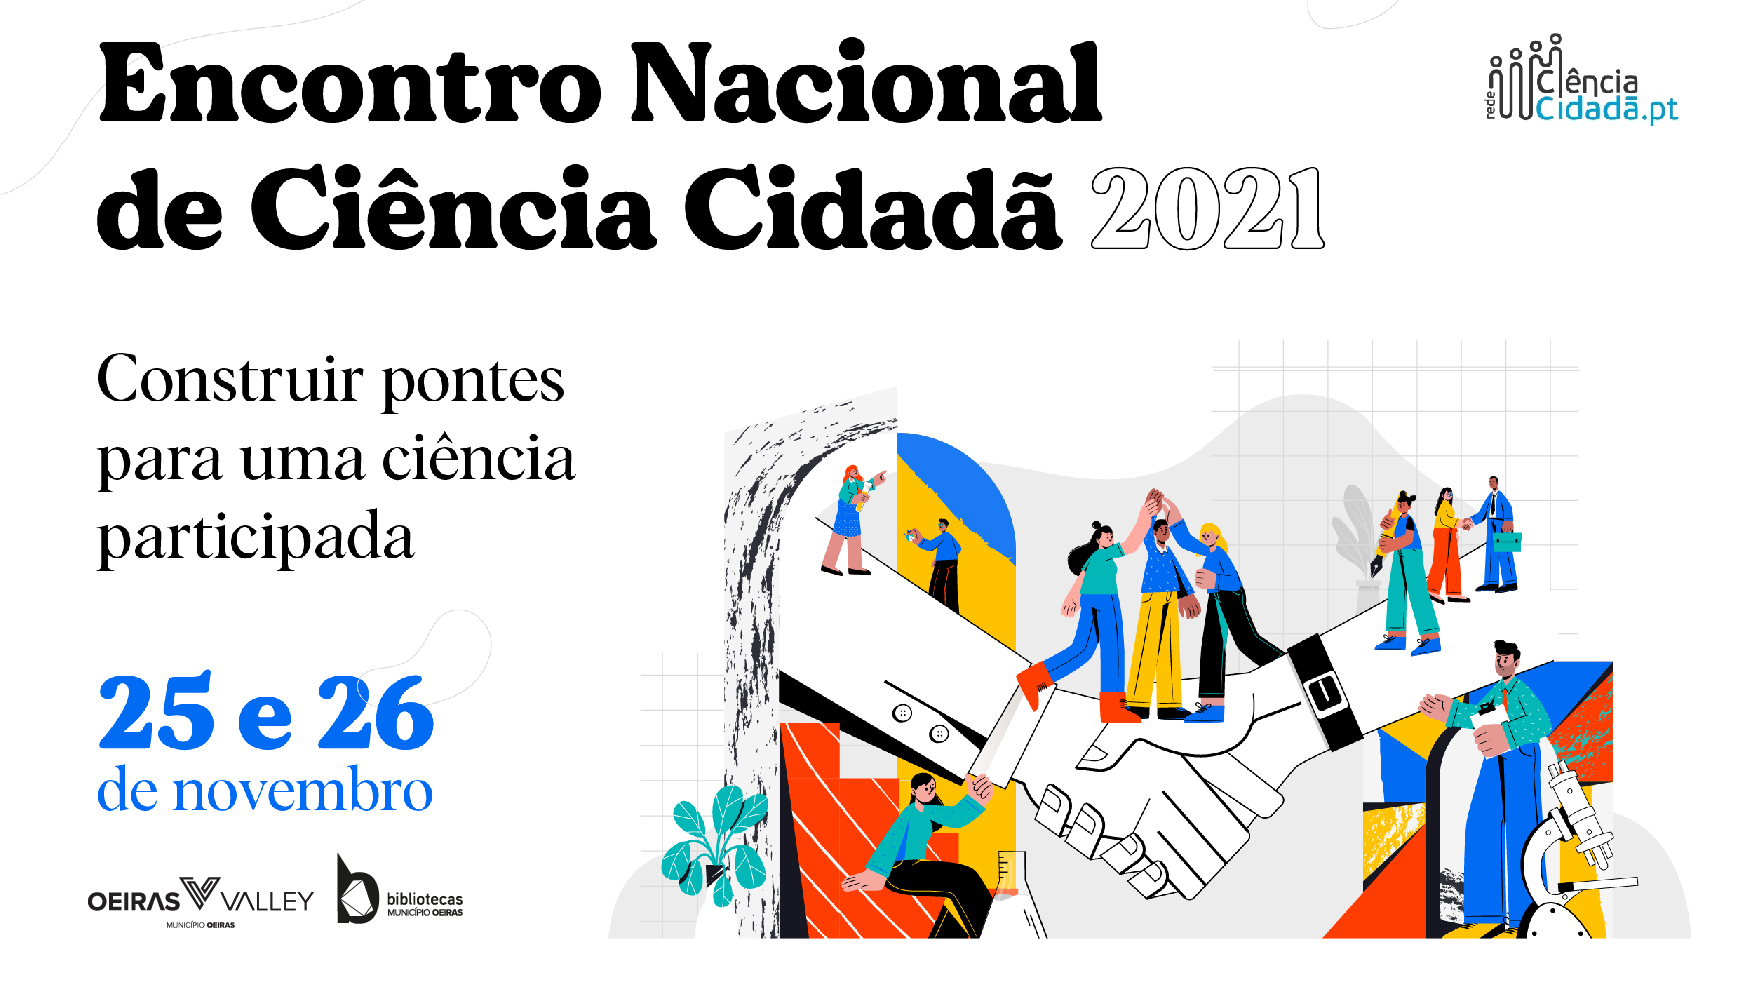 Encontro Nacional de Ciência Cidadã 2021